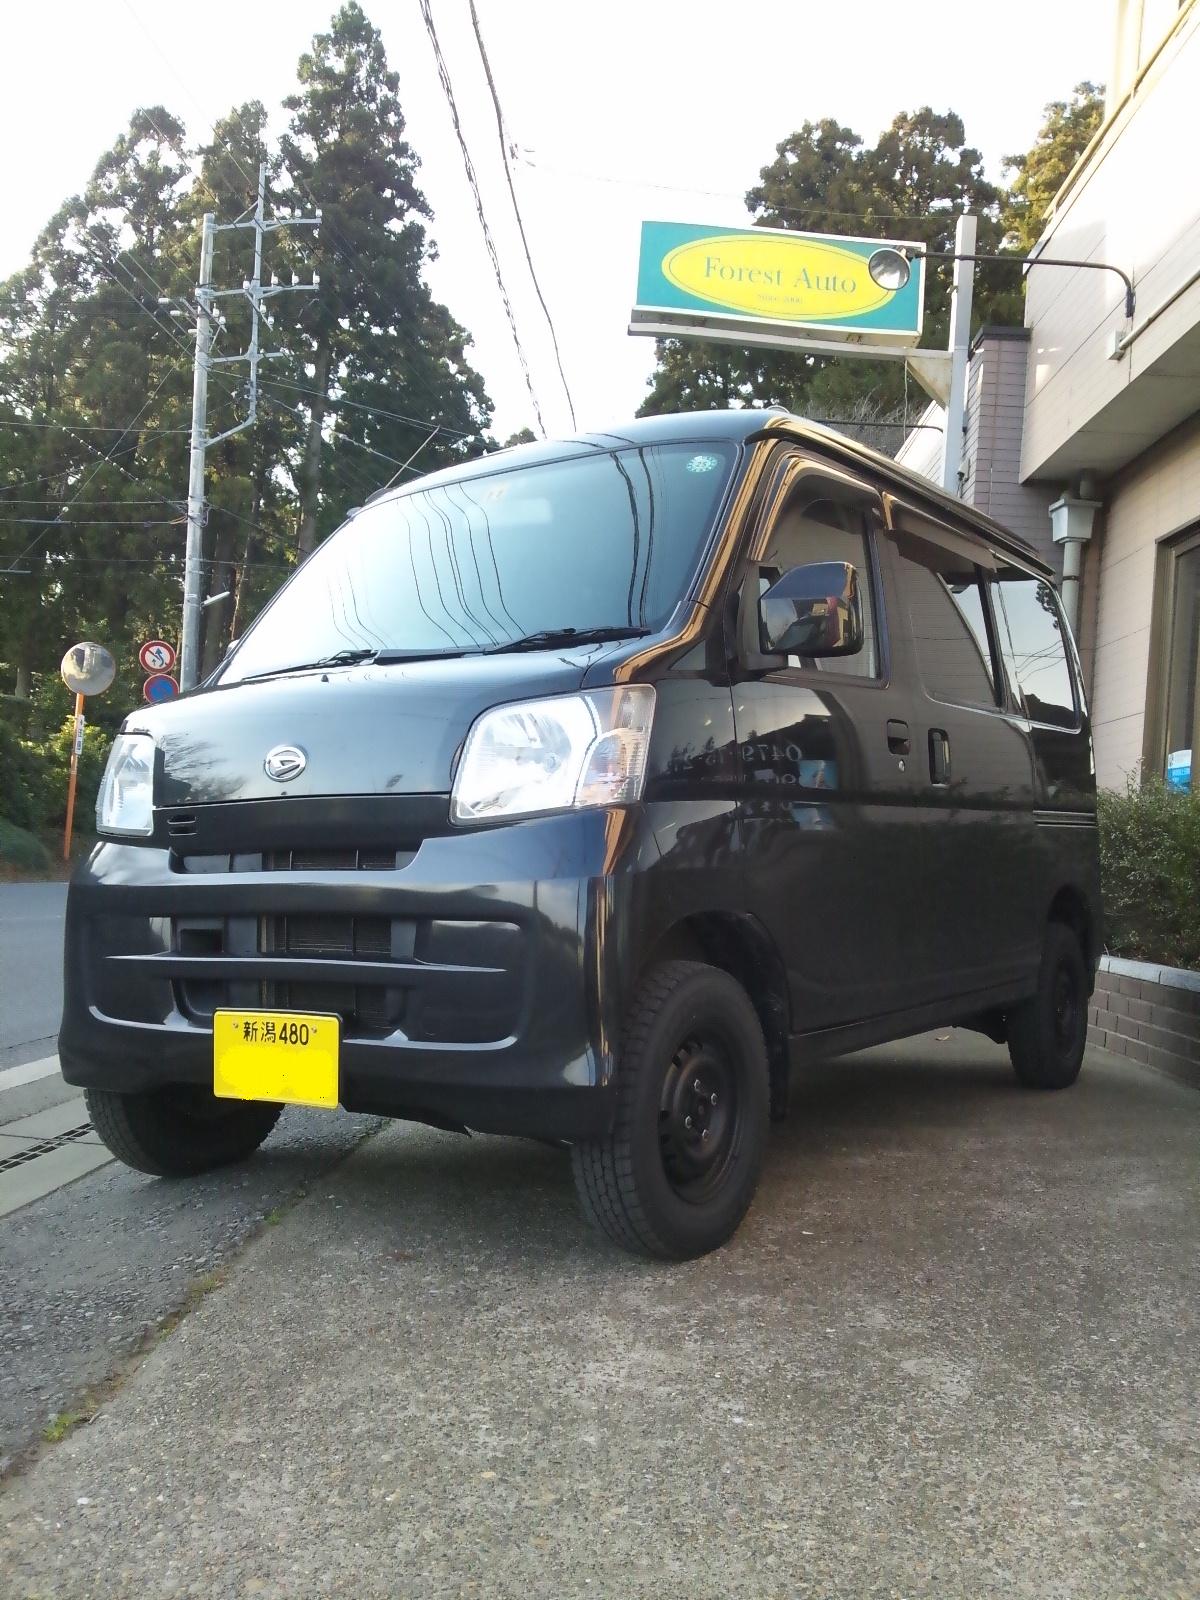 ﾀﾞｲﾊﾂ ﾊｲｾﾞｯﾄ ｶｰｺﾞ 4WD （型式S331V） 新潟県 阿賀野市 T 様 - Home